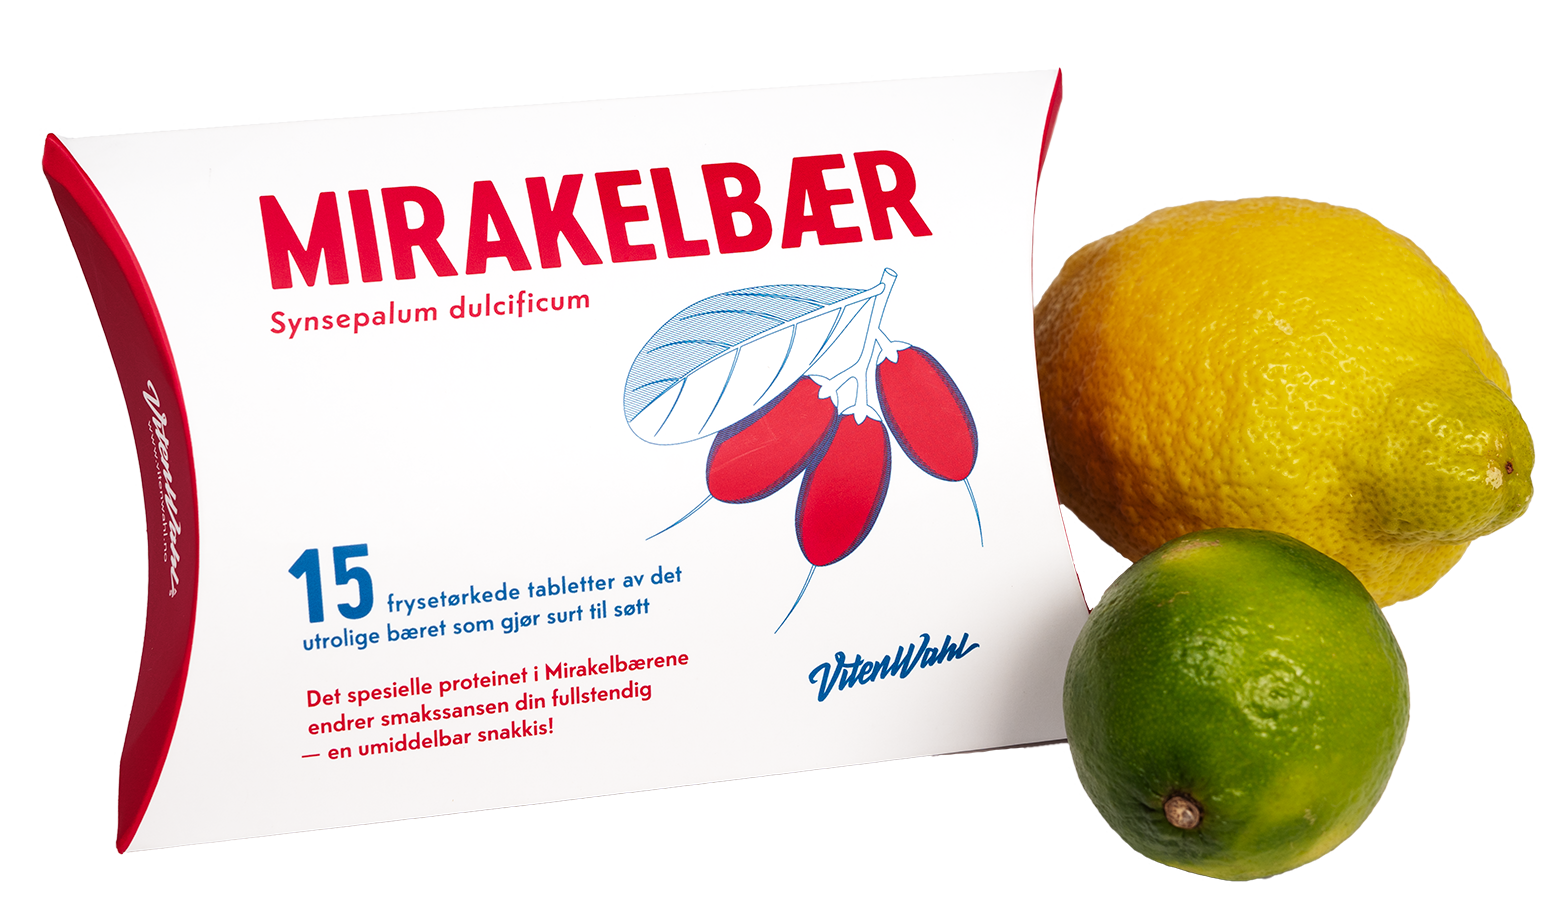 Mirakelbær - en nyhet i Norge!